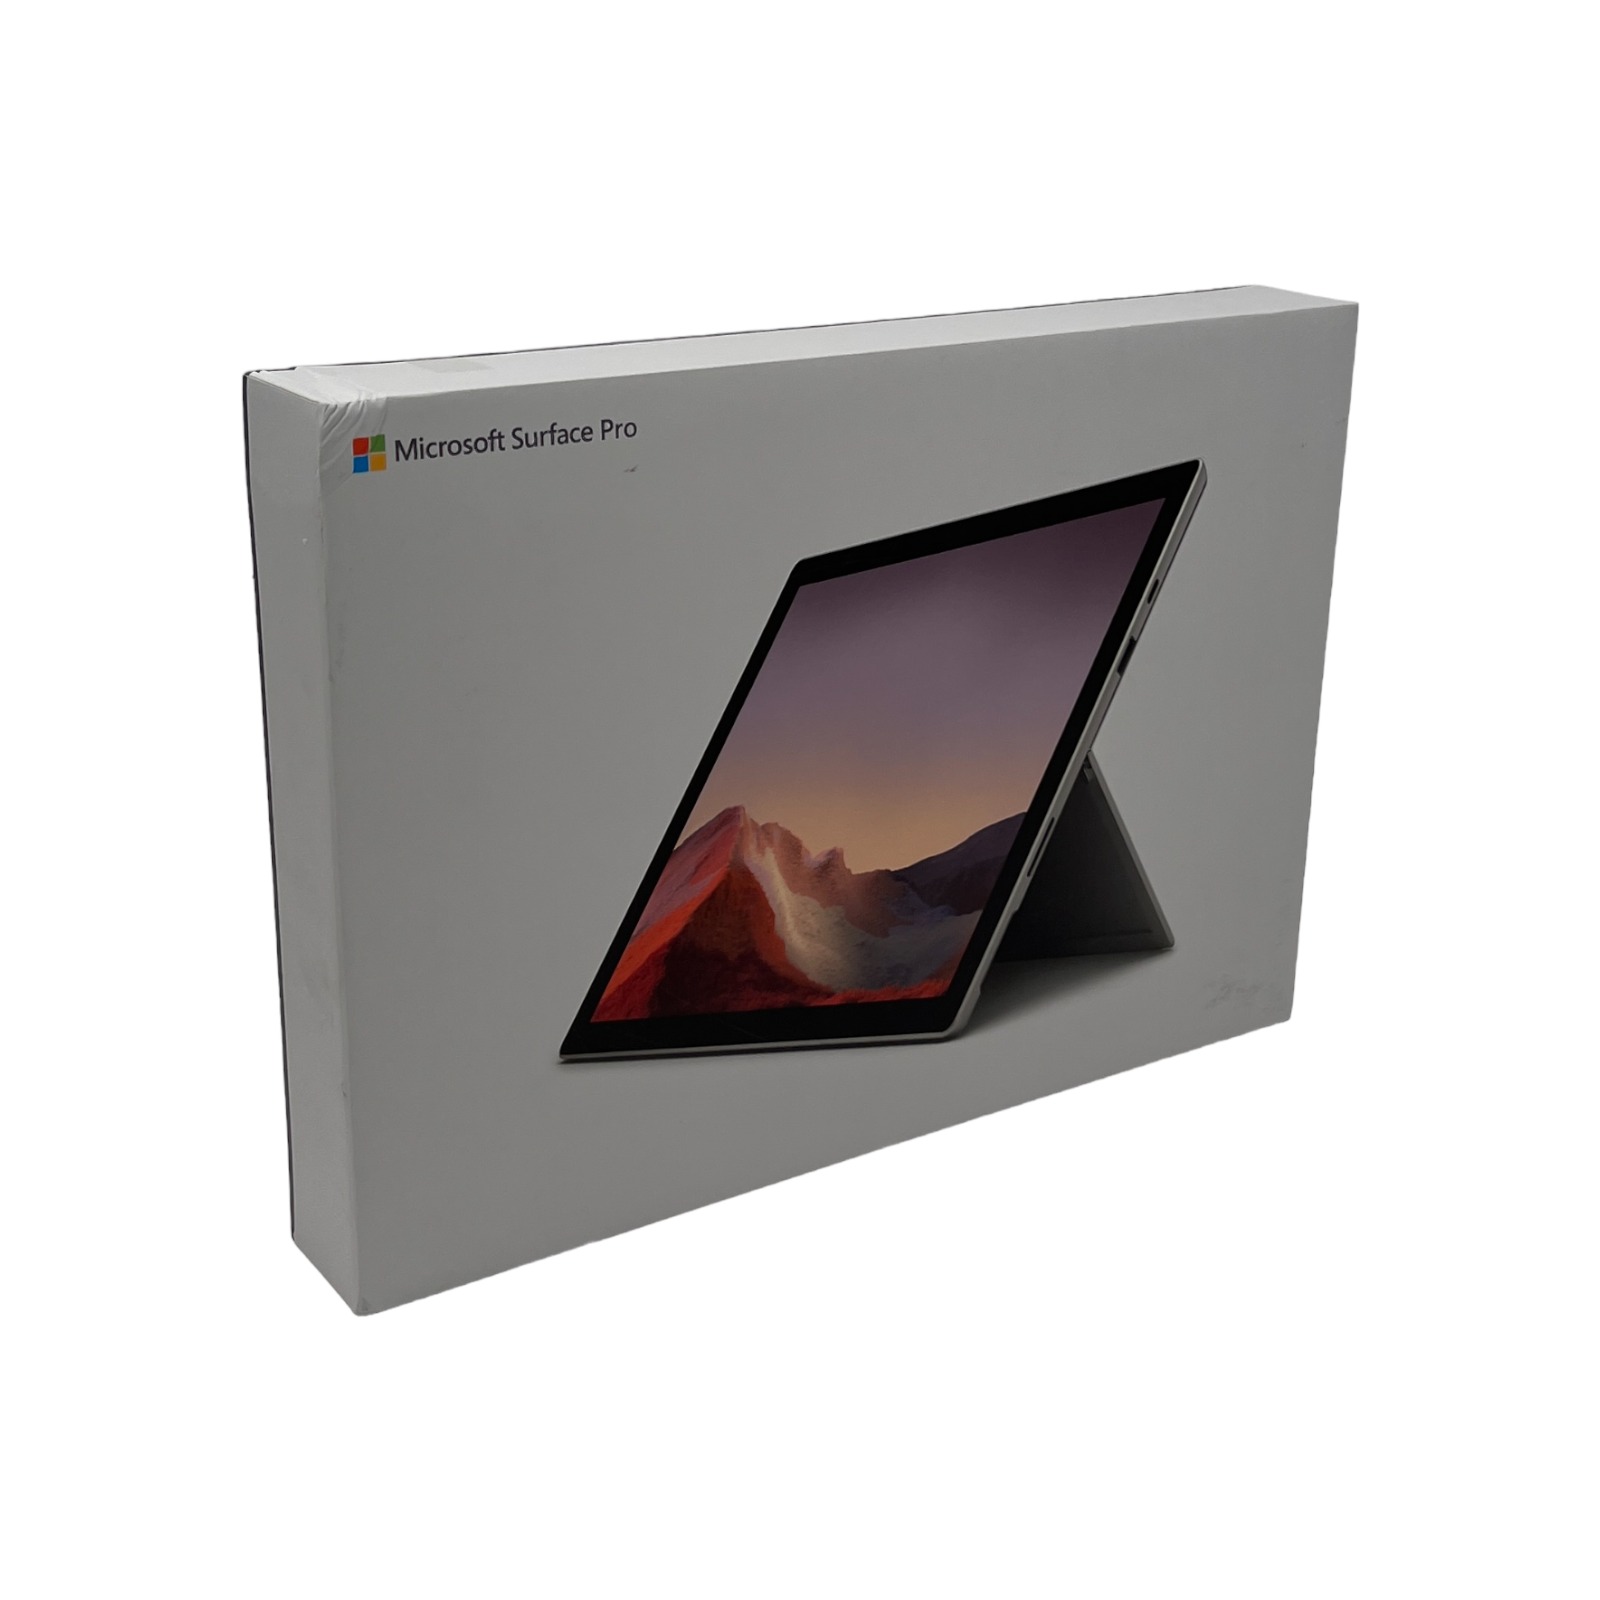 100%新品爆買いマイクロソフト Surface Pro7 i3/4GB/128GB Windowsタブレット本体